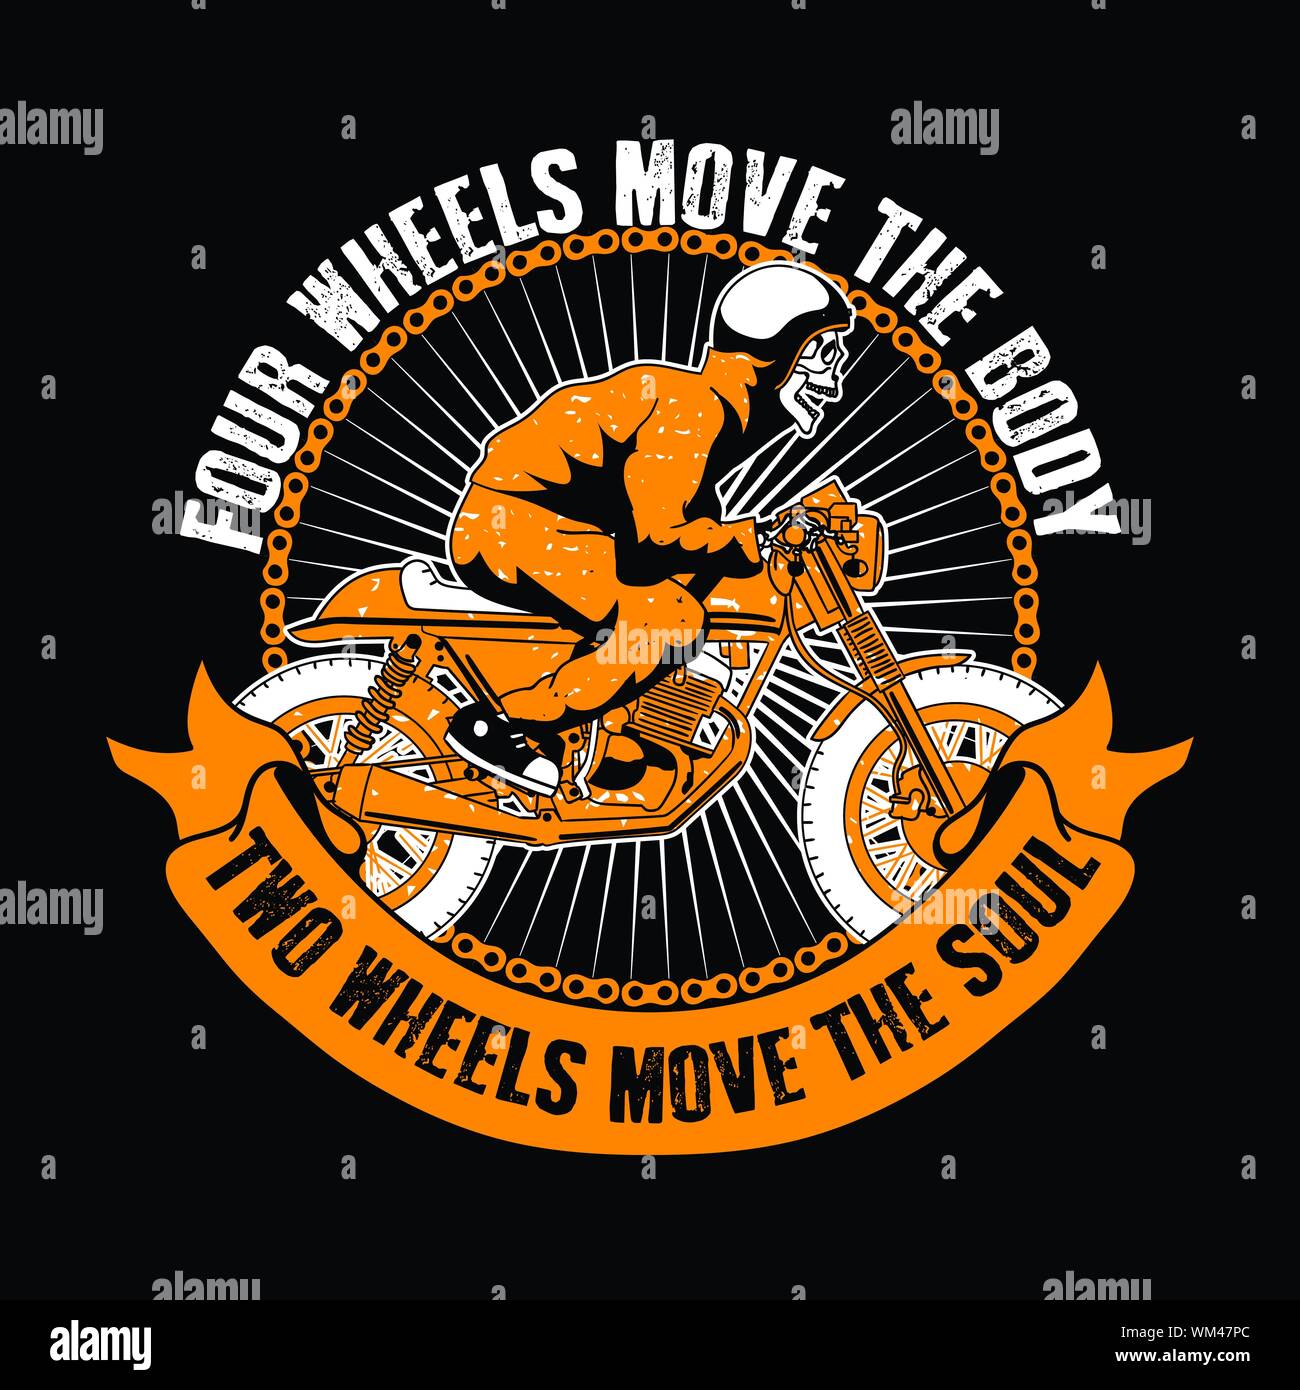 Biker-Zitat und Motto gut für T-Shirt. Vier Räder bewegen den Körper, zwei Rädern die Seele bewegen. Schädel fahrt Motorrad Abbildung. Stock Vektor